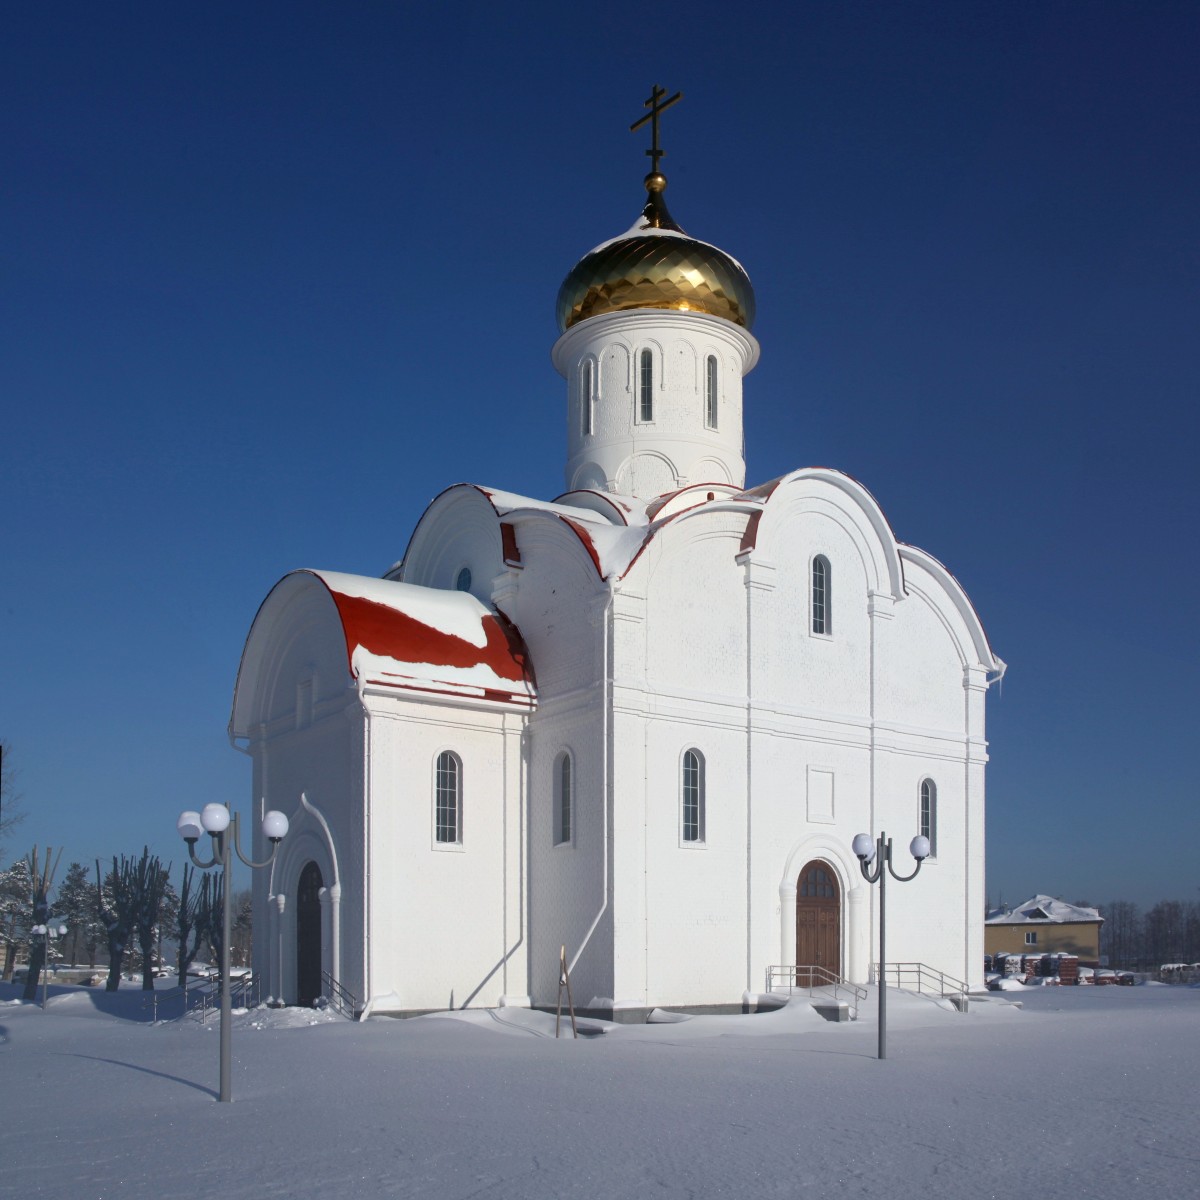 Верхняя Пышма. Церковь Александра Невского в парке 